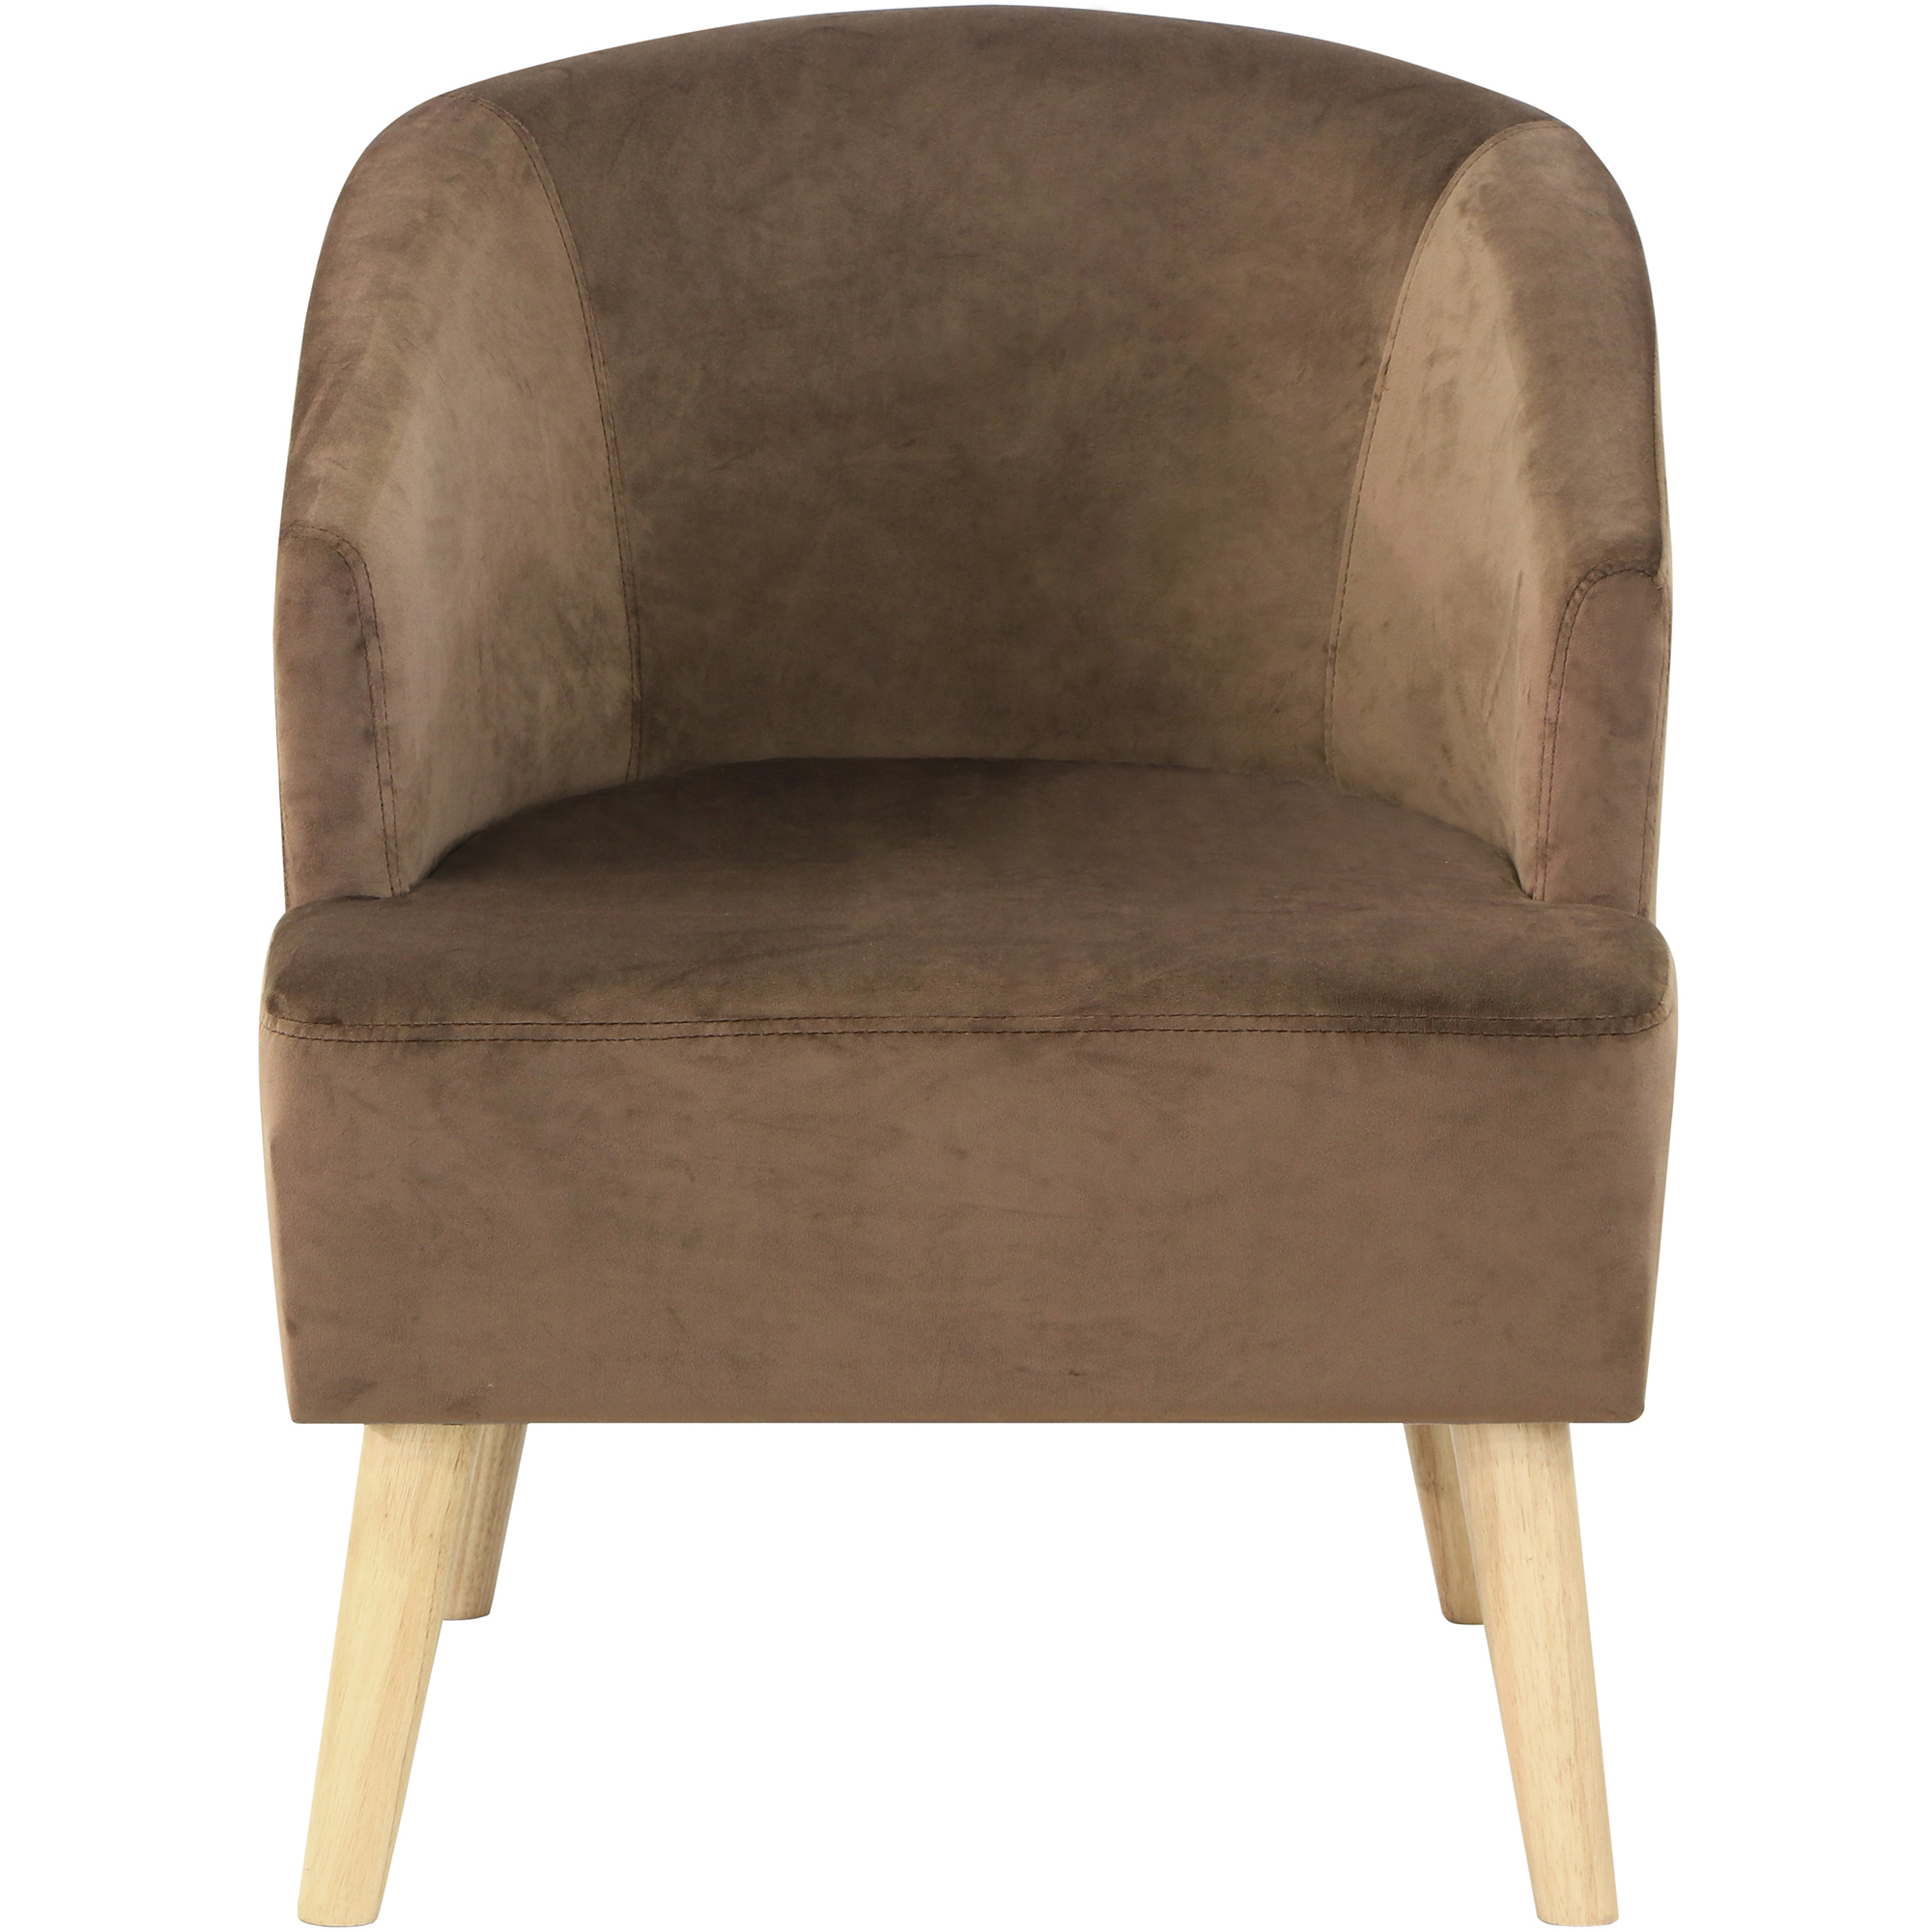 Кресло Shanshi руби коричневое 57x68x70cm, цвет коричневый - фото 2